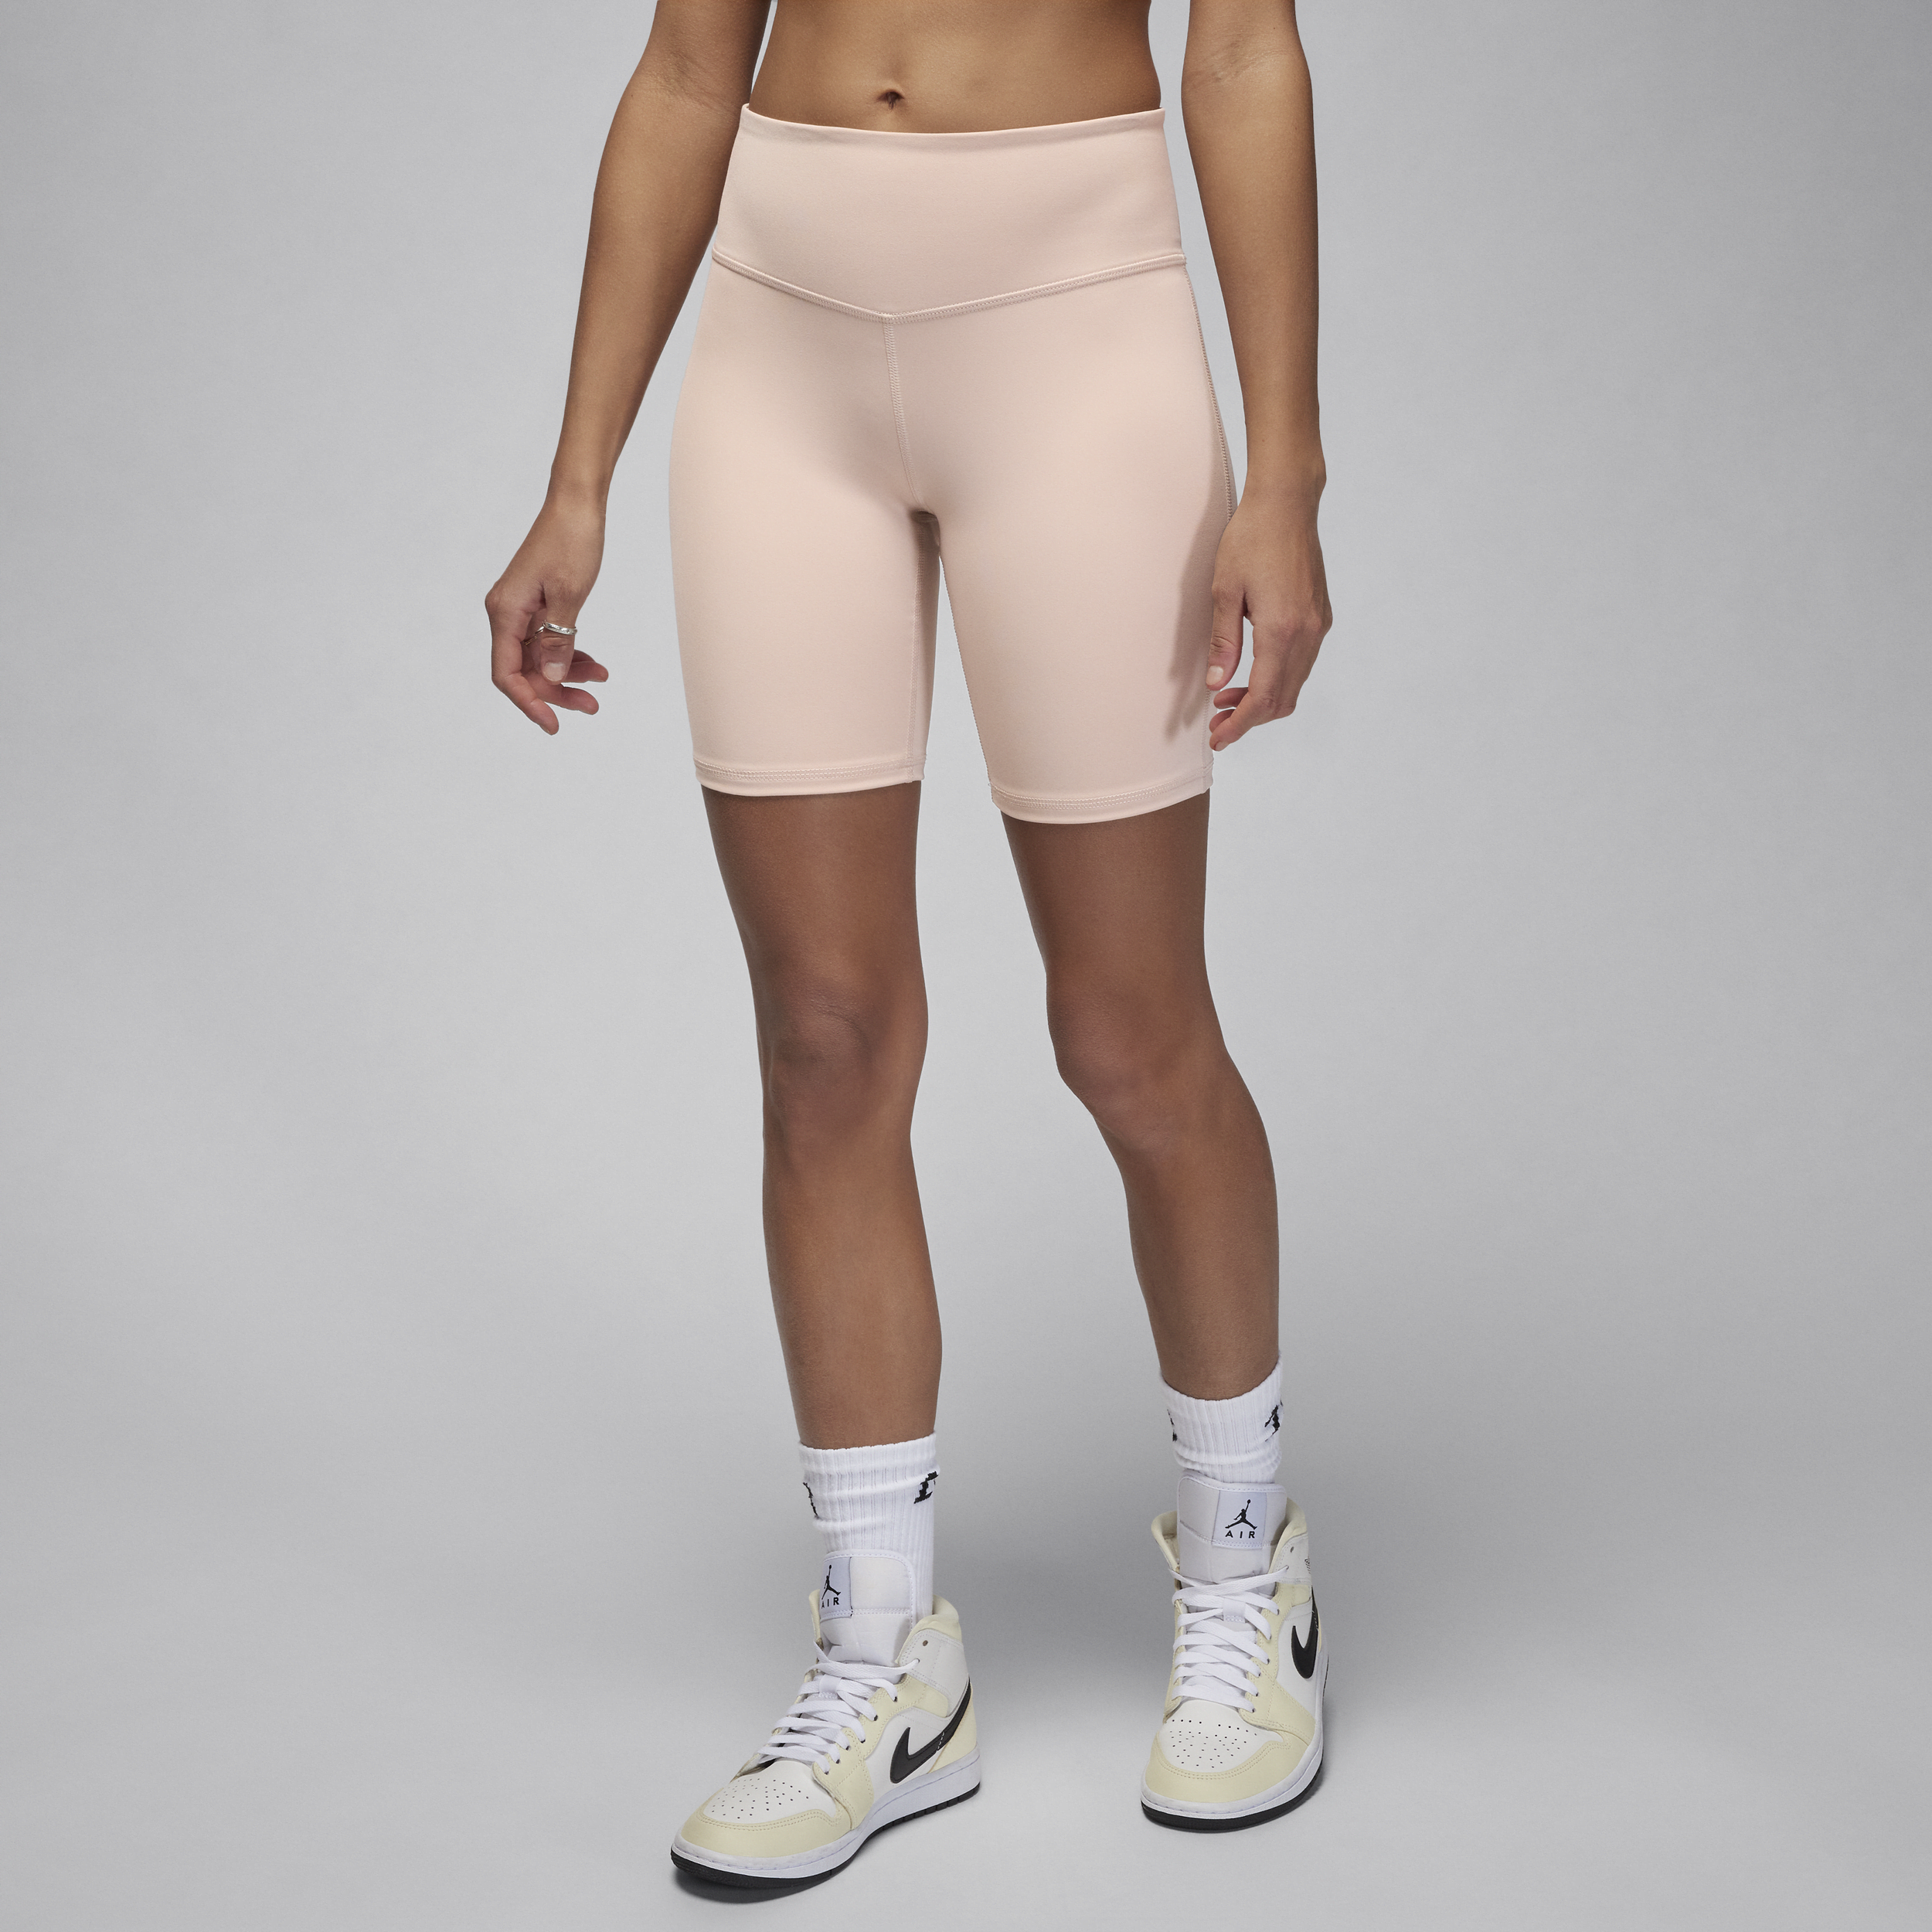 Jordan Sport Mallas cortas de 18 cm y talle alto - Mujer - Marrón